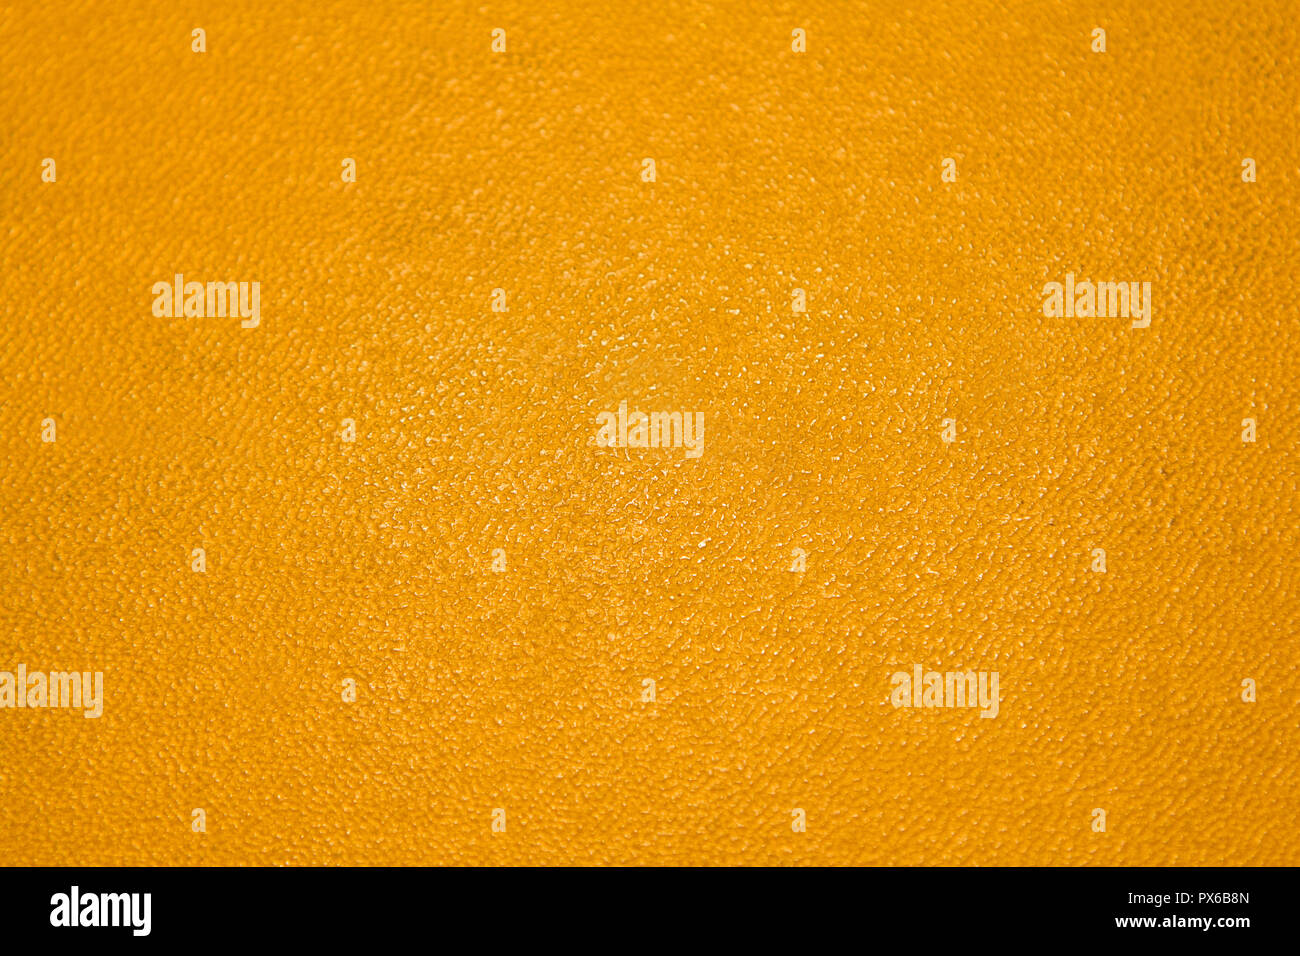 Couleur jaune vif et orange abstract background Banque D'Images